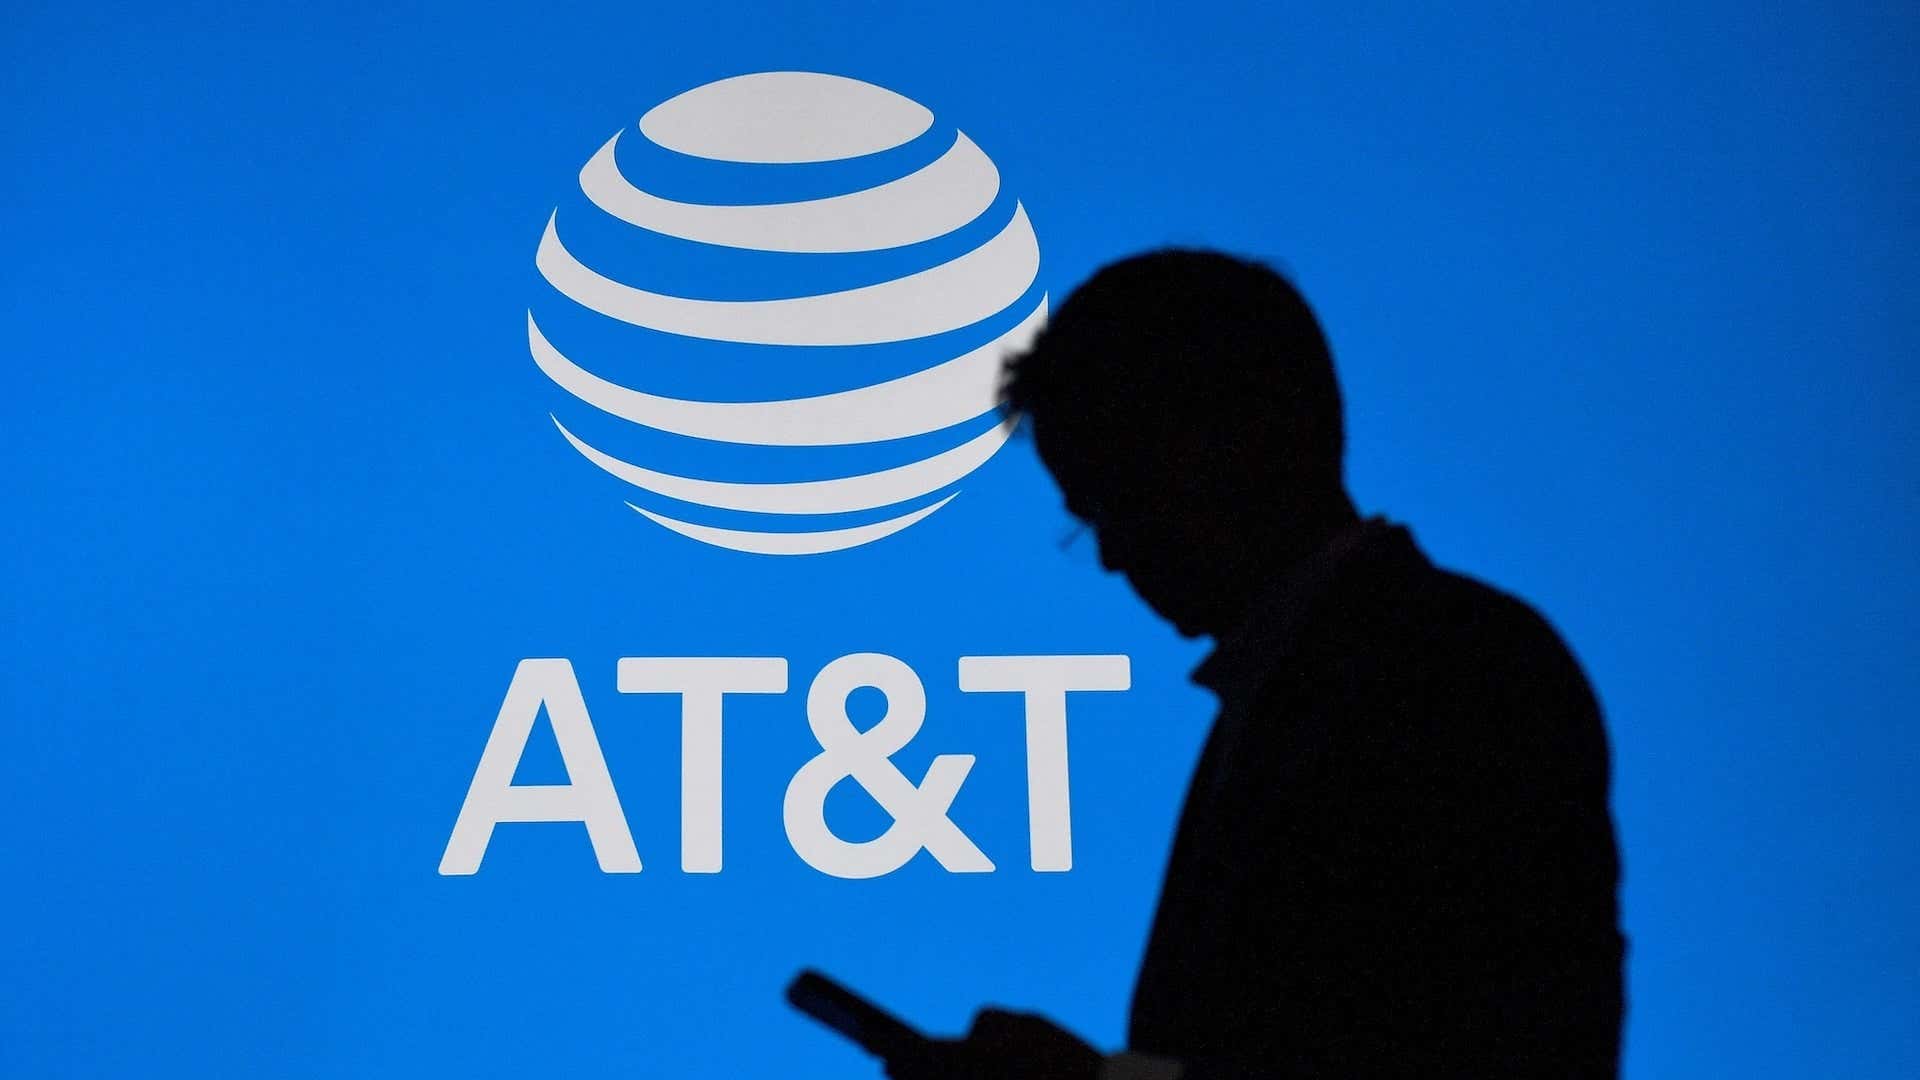 صورة لمقالة بعنوان AT&T تعاني من انقطاع واسع النطاق في الولايات المتحدة (مرة أخرى)